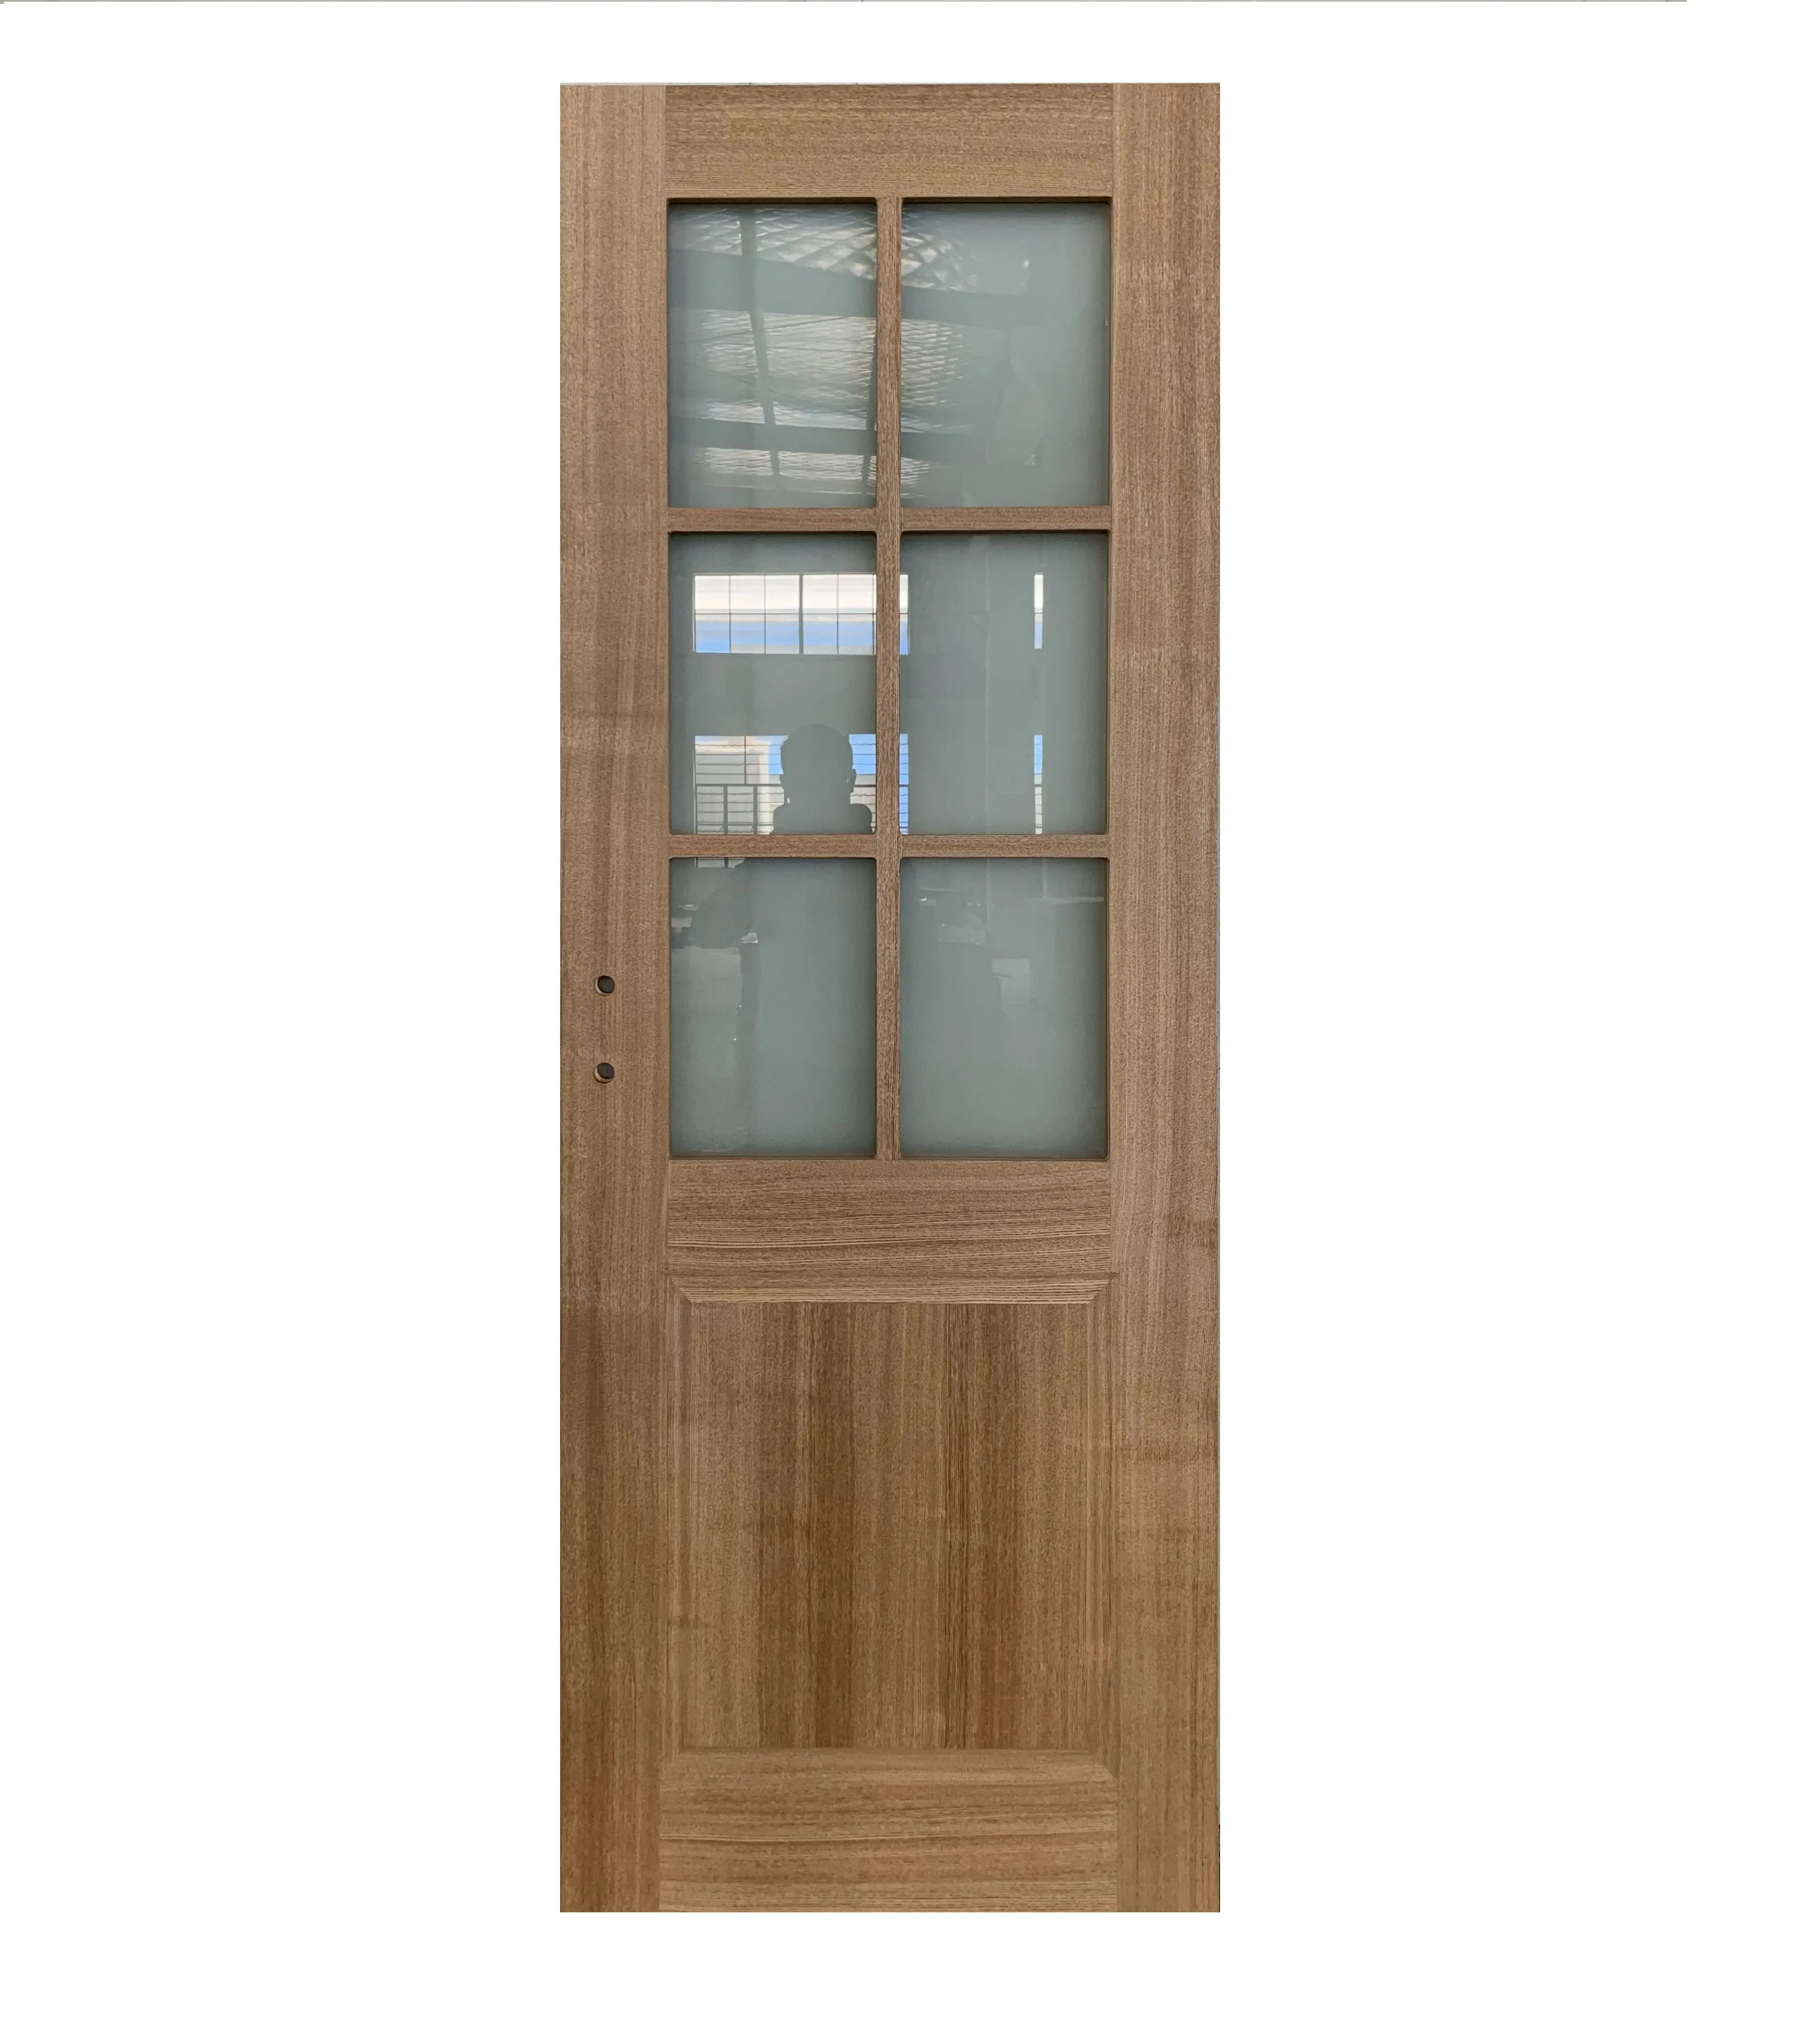 สำนักงานออกแบบอิตาลีประตูไม้ที่มีพื้นผิวกระจก